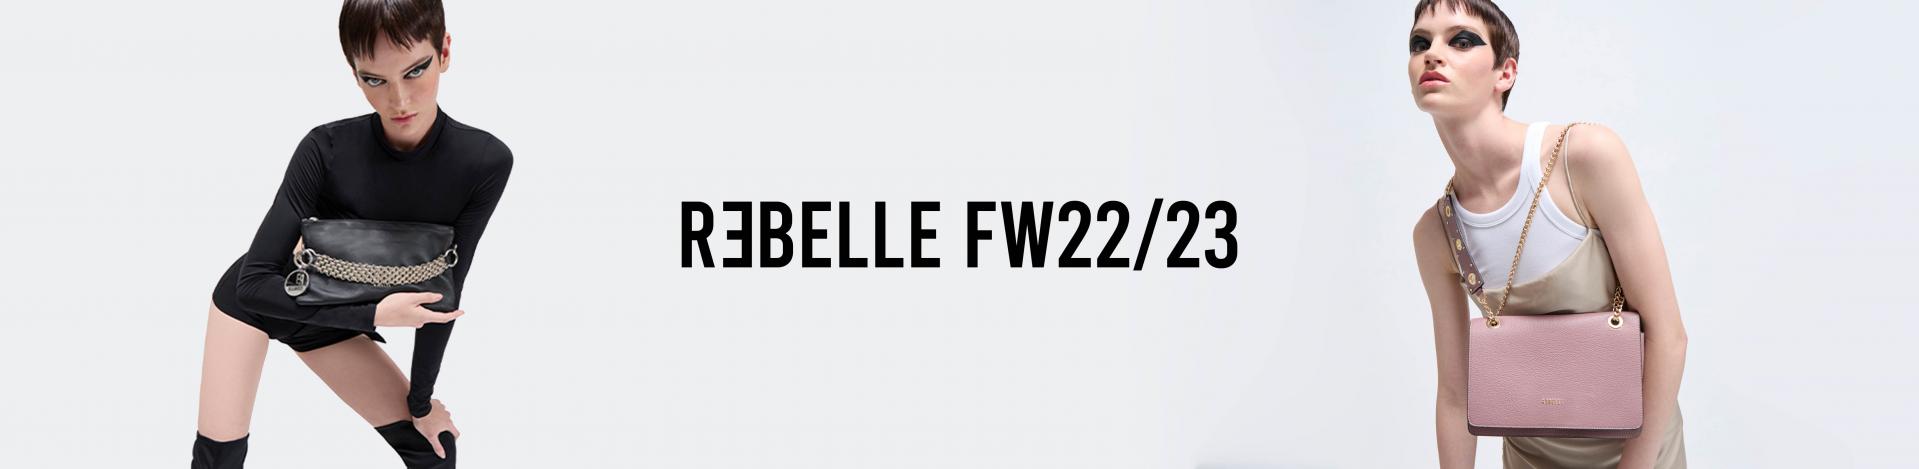 Rebelle presents FW22/23